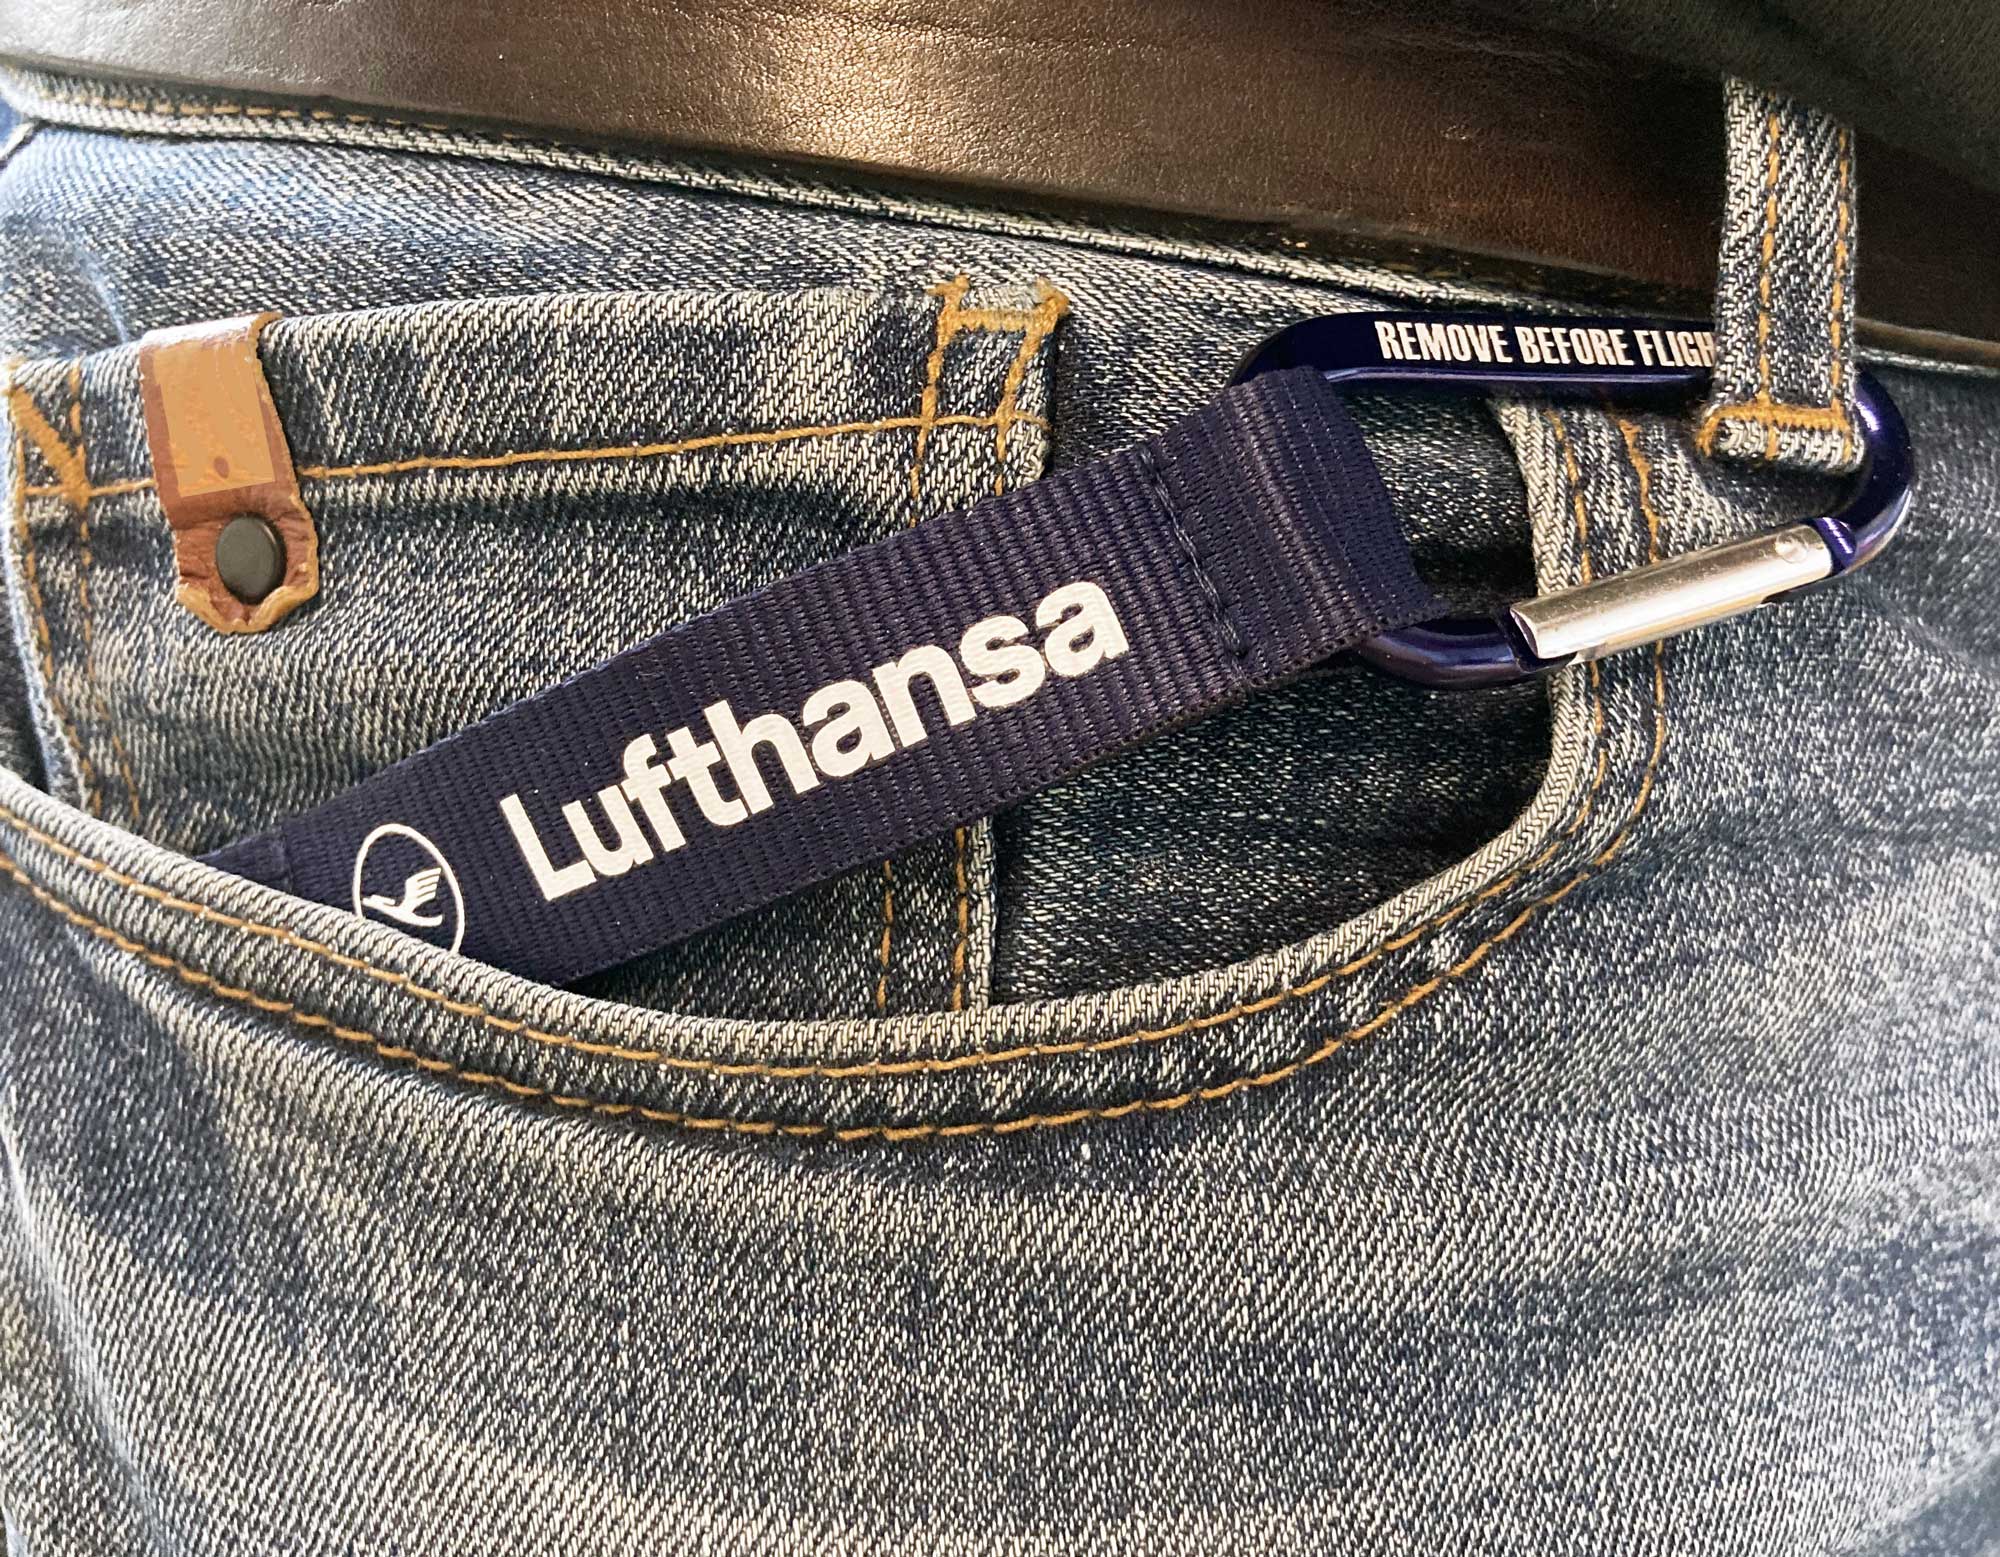 RBF Schlüsselanhänger "Lufthansa/Remove Before Flight" mit Karabiner-Strap 